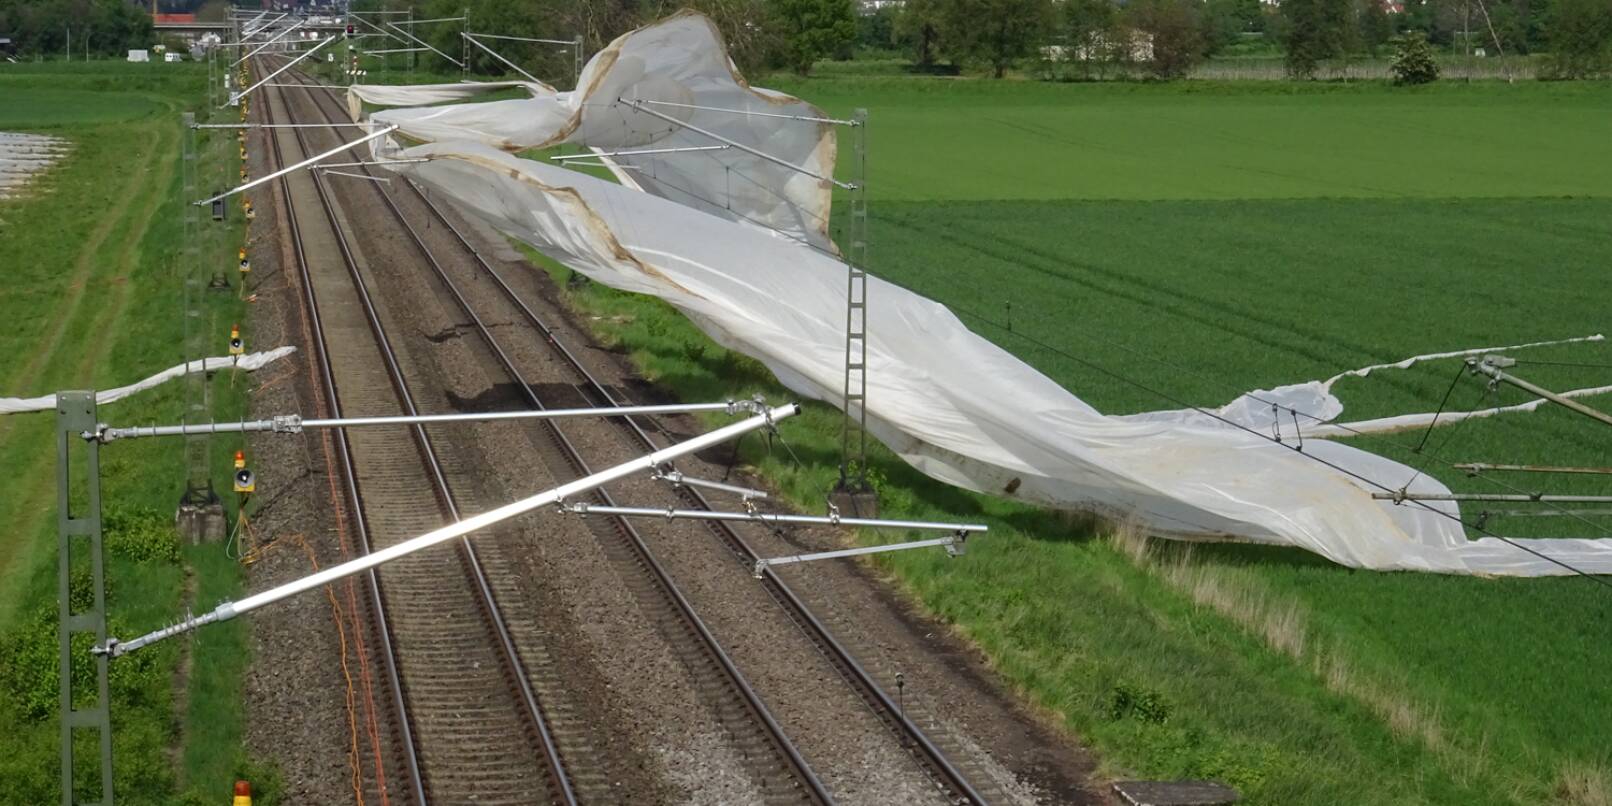 Eine Plane flog vom Feld auf die Oberleitungen des Schienennetzes zwischen Weinheim und Hirschberg.